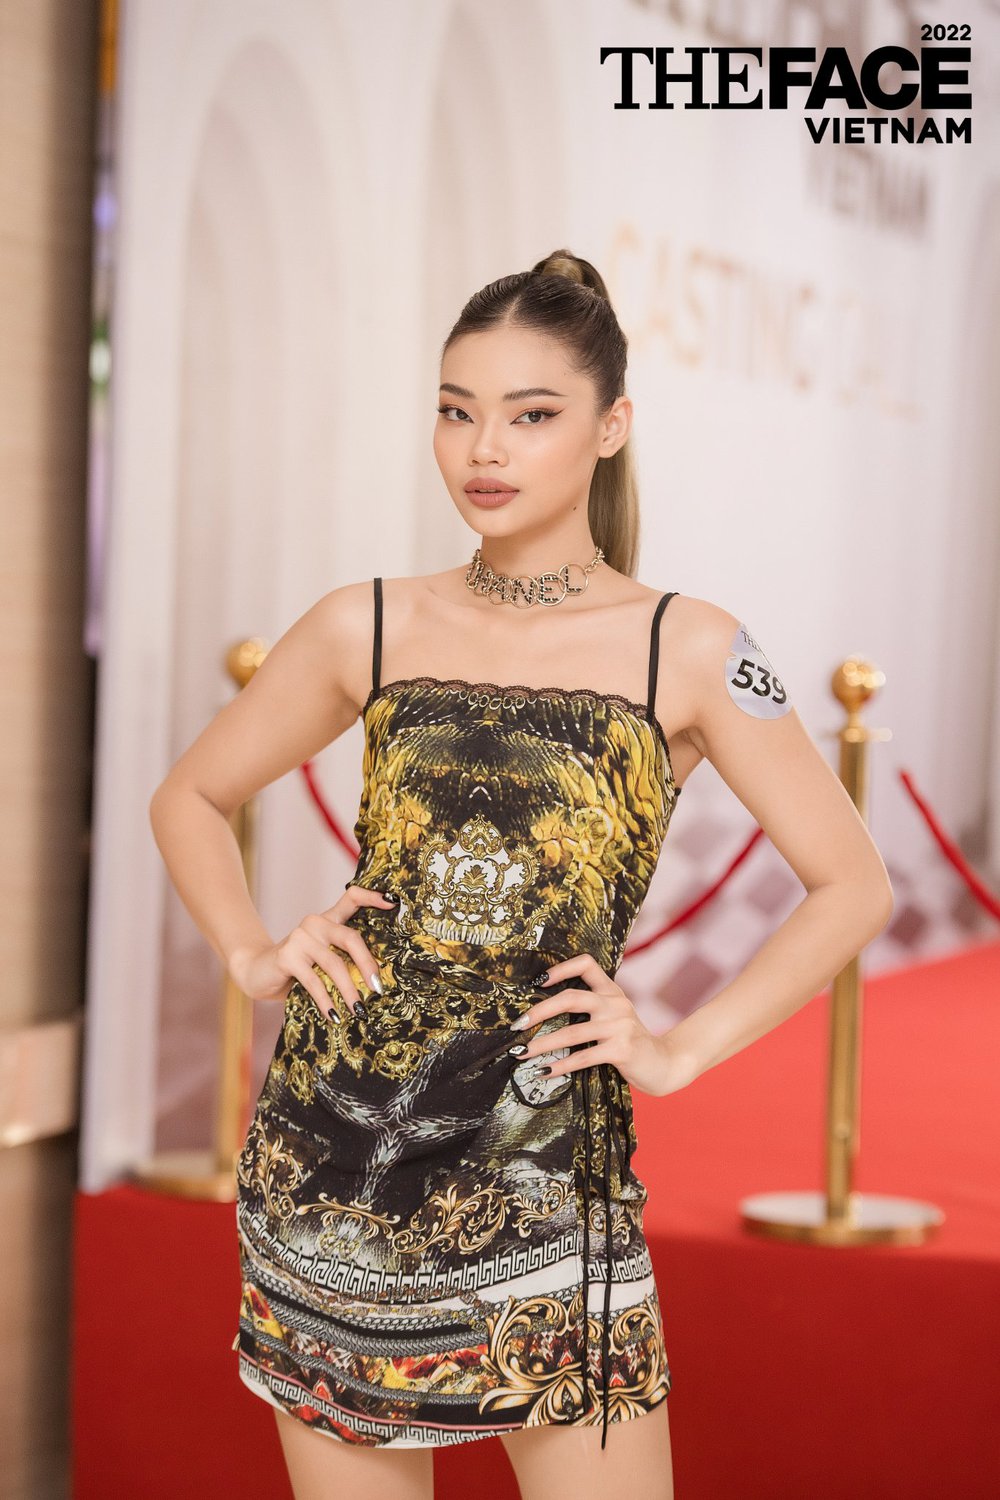 Hoa hậu Kỳ Duyên, Minh Triệu khoe khả năng catwalk - Ảnh 11.